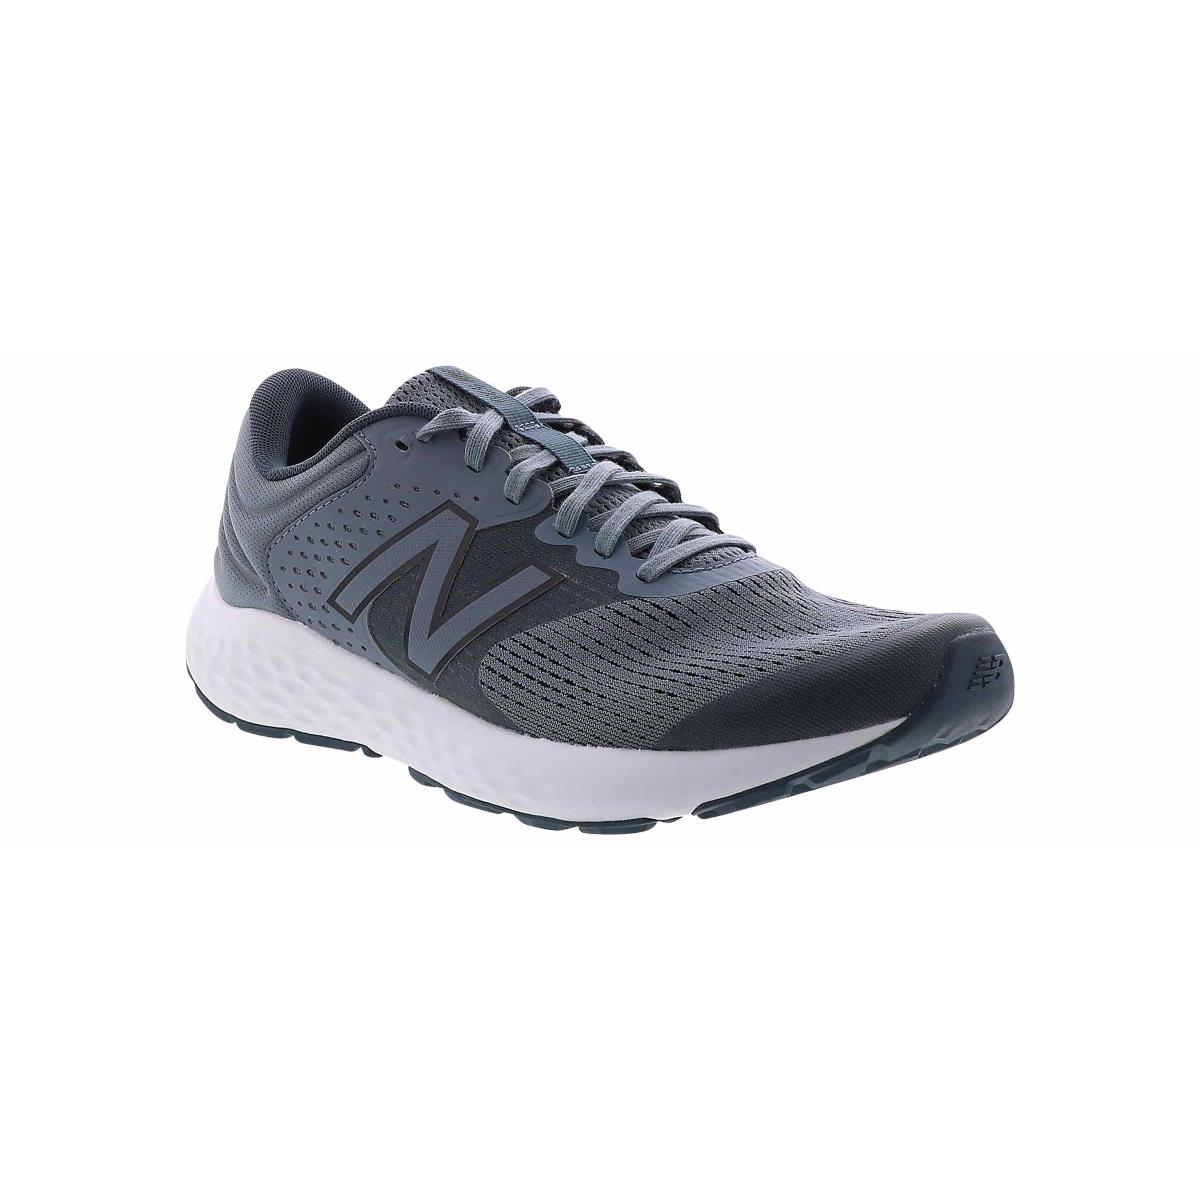 New Balance 520 v 7 Running Shoe Grey Grey